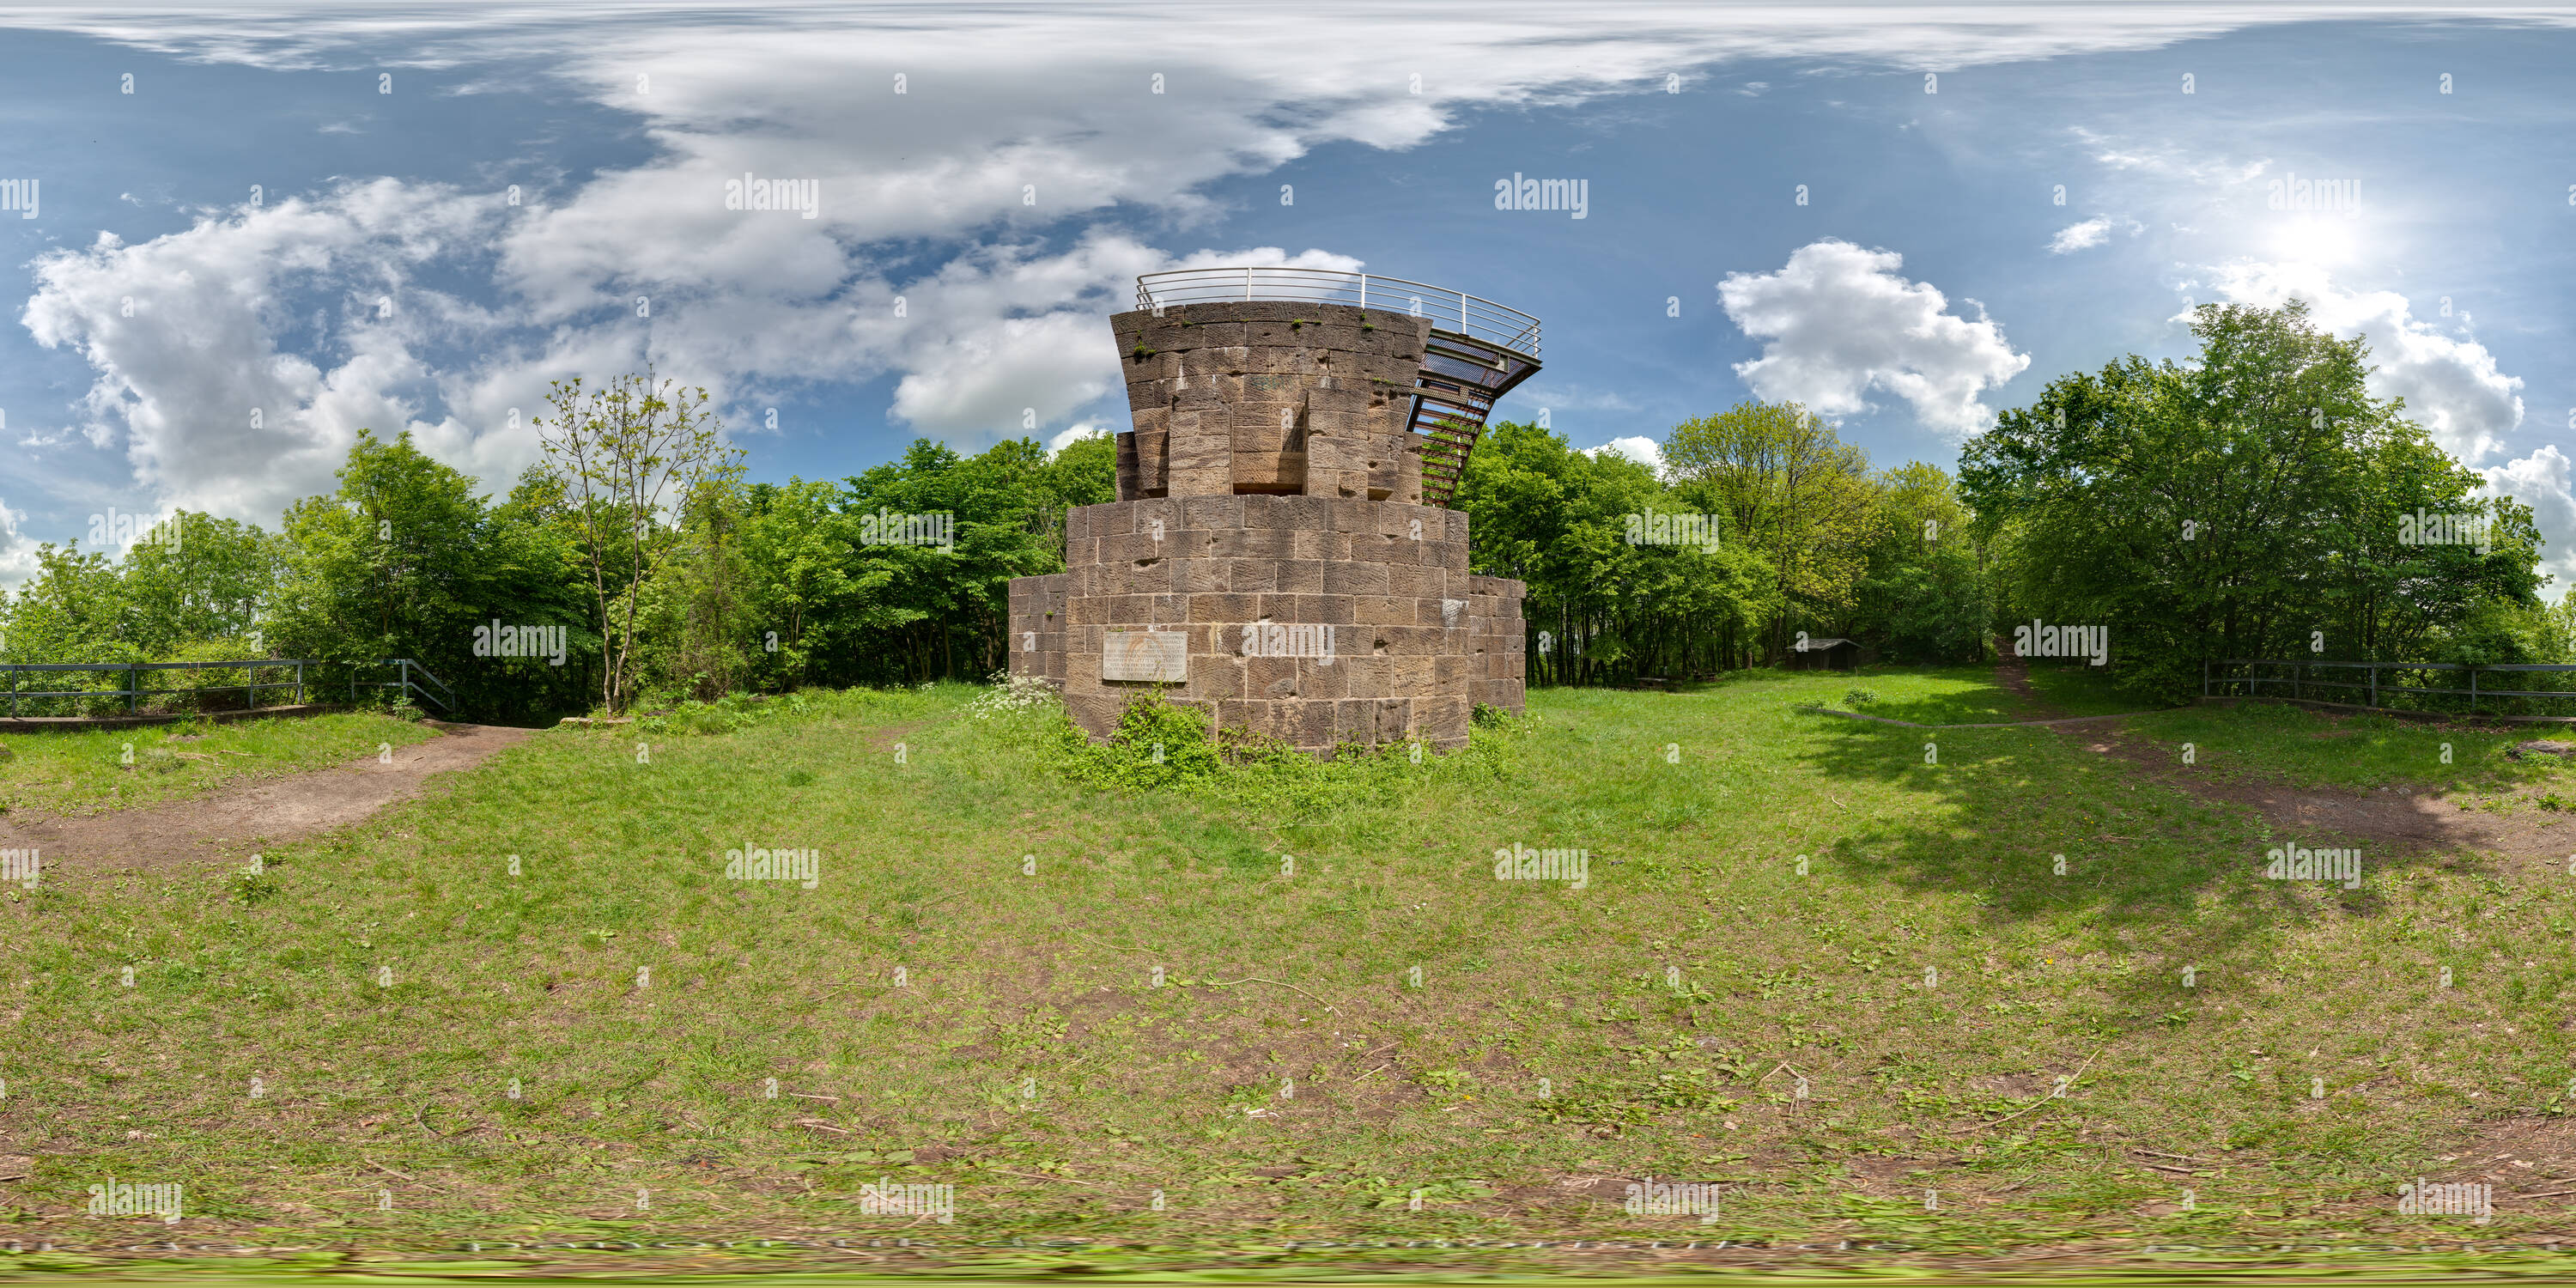 360 degree panoramic view of Am Fuße der Reste des Schlageter-Denkmals